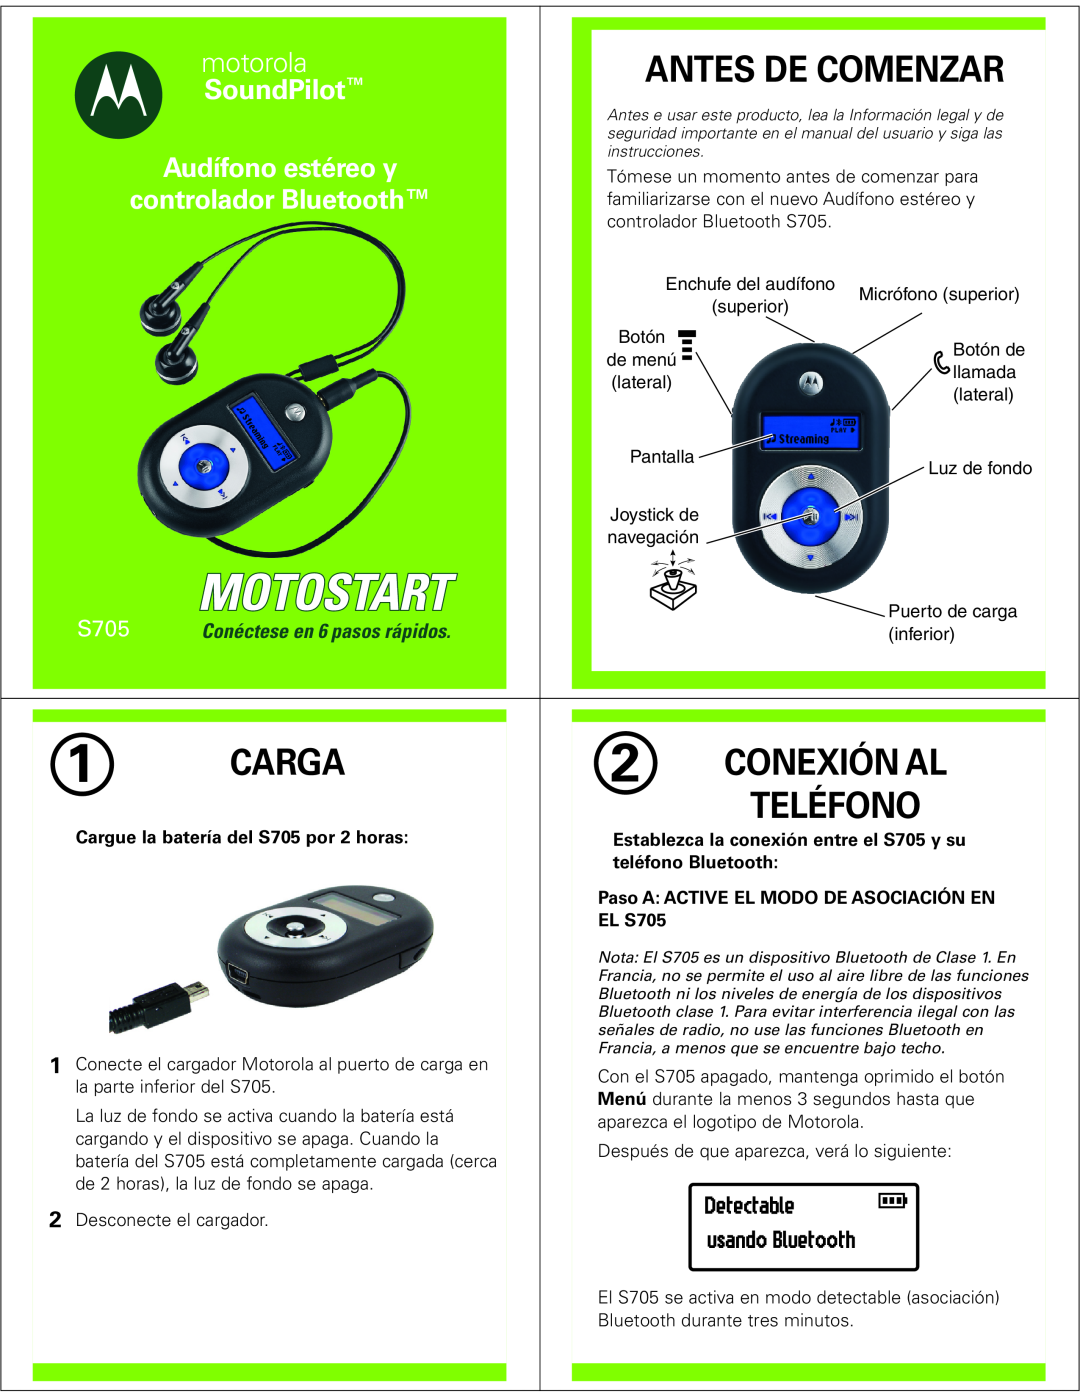 Motorola Antes De Comenzar, Carga, Conexión Al, Teléfono, Detectable, usando Bluetooth, motorola, SoundPilot, EL S705 